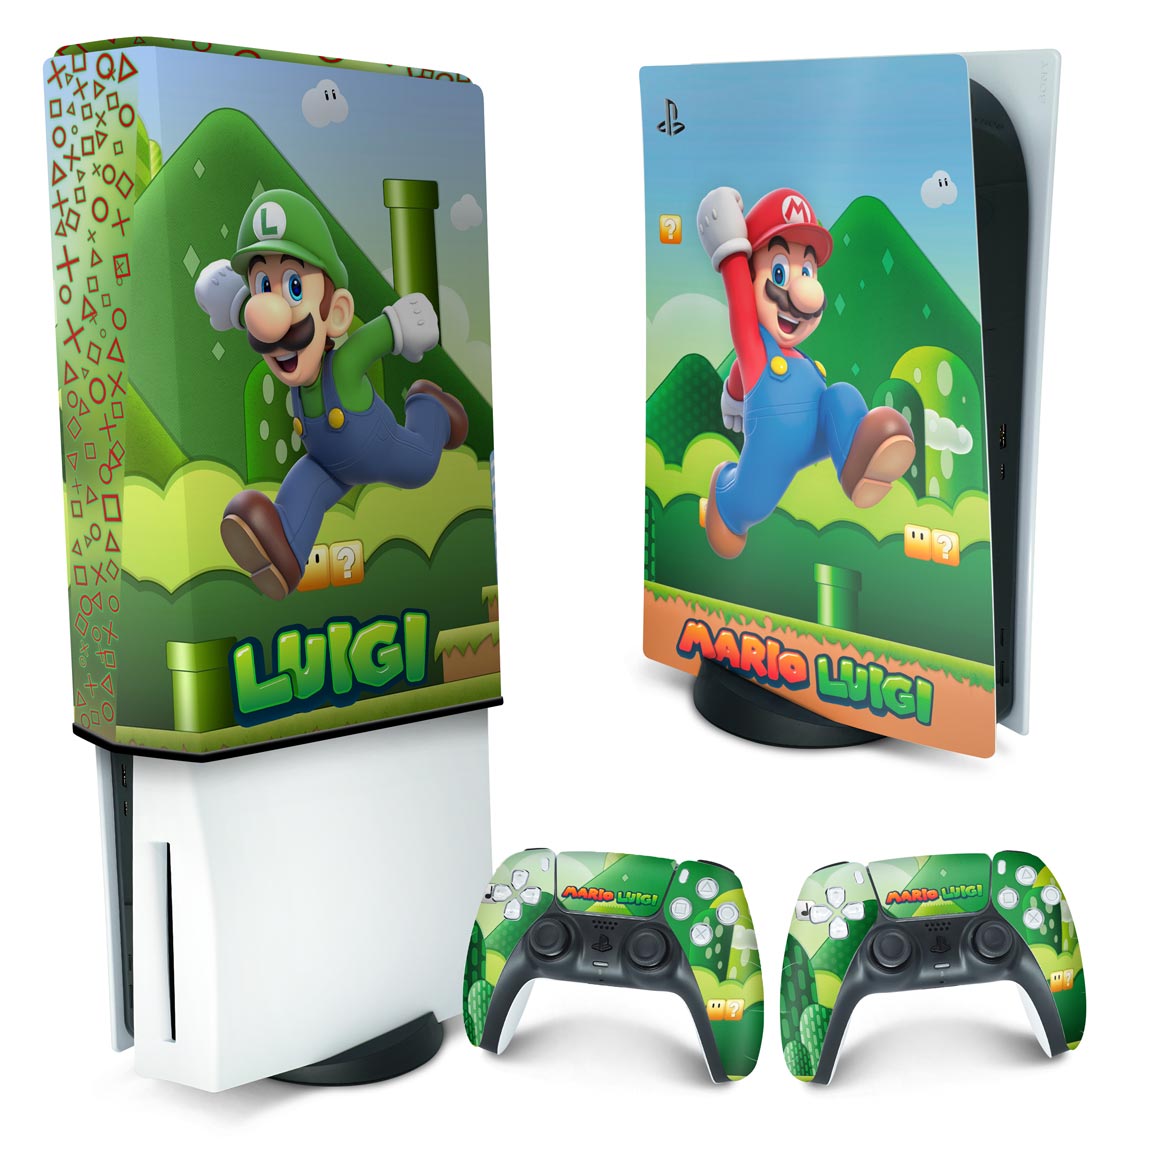 Xbox 360 Slim Skin - Mario & Luigi - Pop Arte Skins Atacado